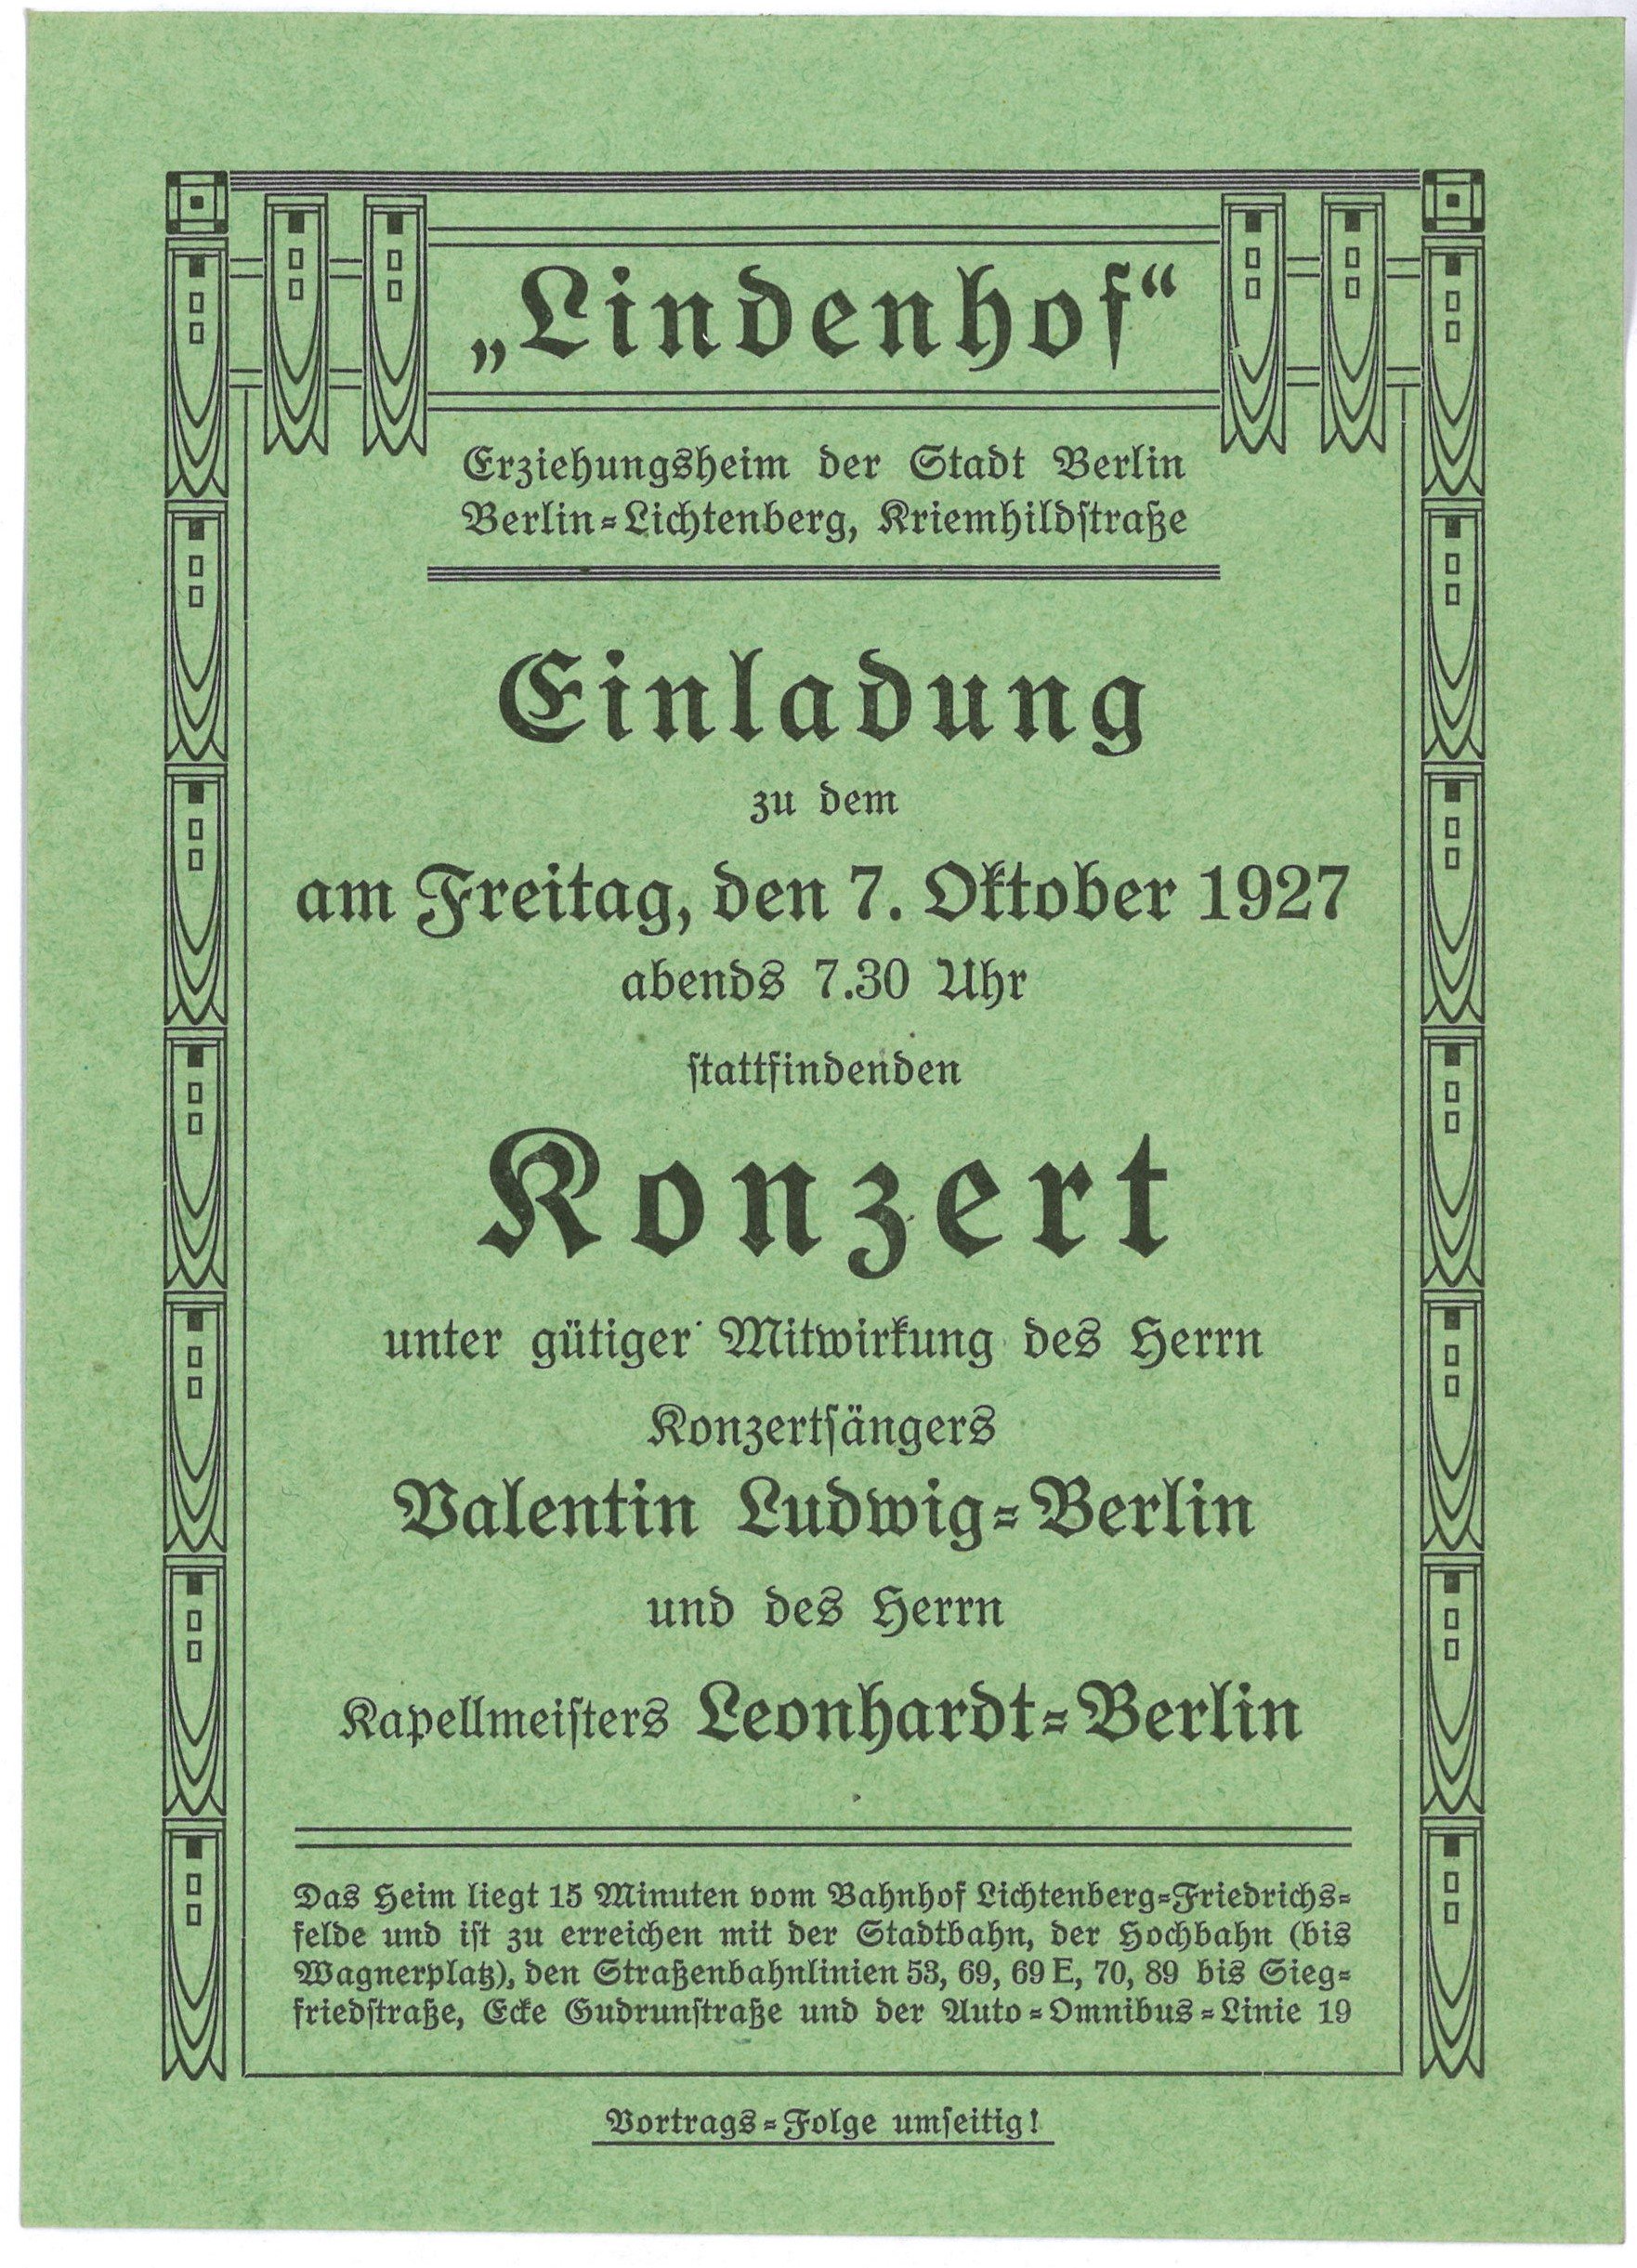 Einladung und Programm zum Konzert im Lindenhof in Berlin-Lichtenberg am 7. Oktober 1927 (Landesgeschichtliche Vereinigung für die Mark Brandenburg e.V., Archiv CC BY)